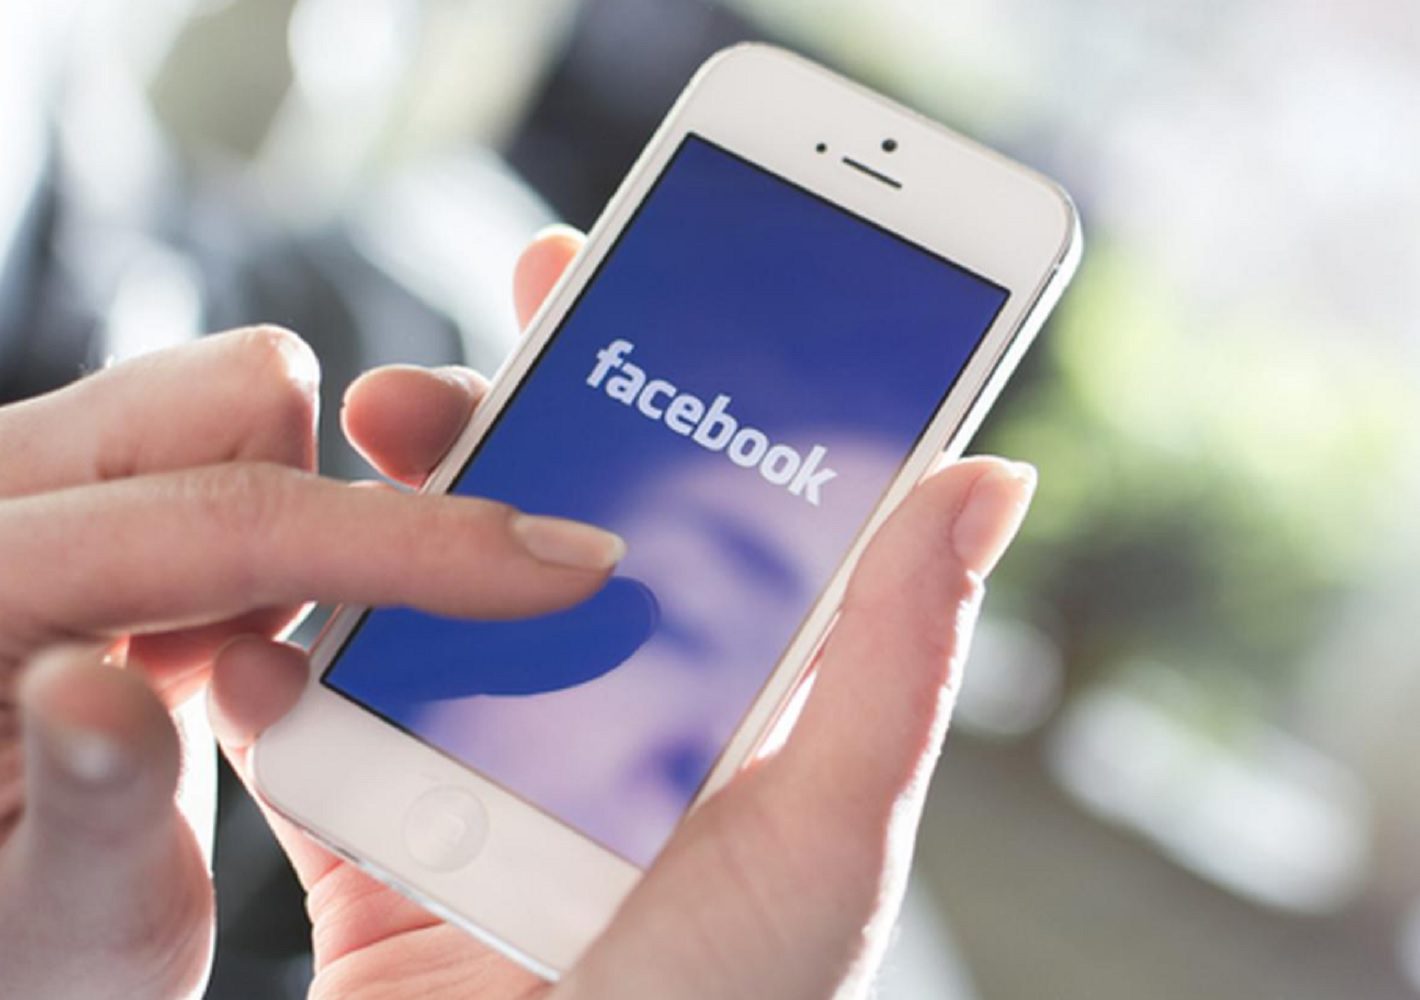 Cara Melihat Facebook Yang Sudah Dihapus. 4 Cara Mencari FB Yang Sudah Dihapus Dan Mengembalikan